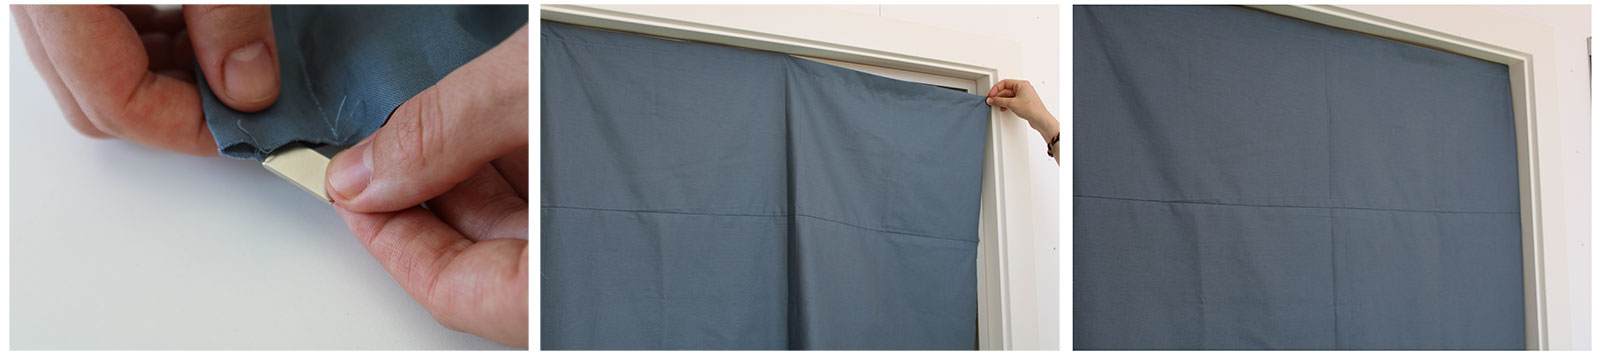 Brug blokmagneter i gardinets løbegang i toppen til at fastholde dit gardin